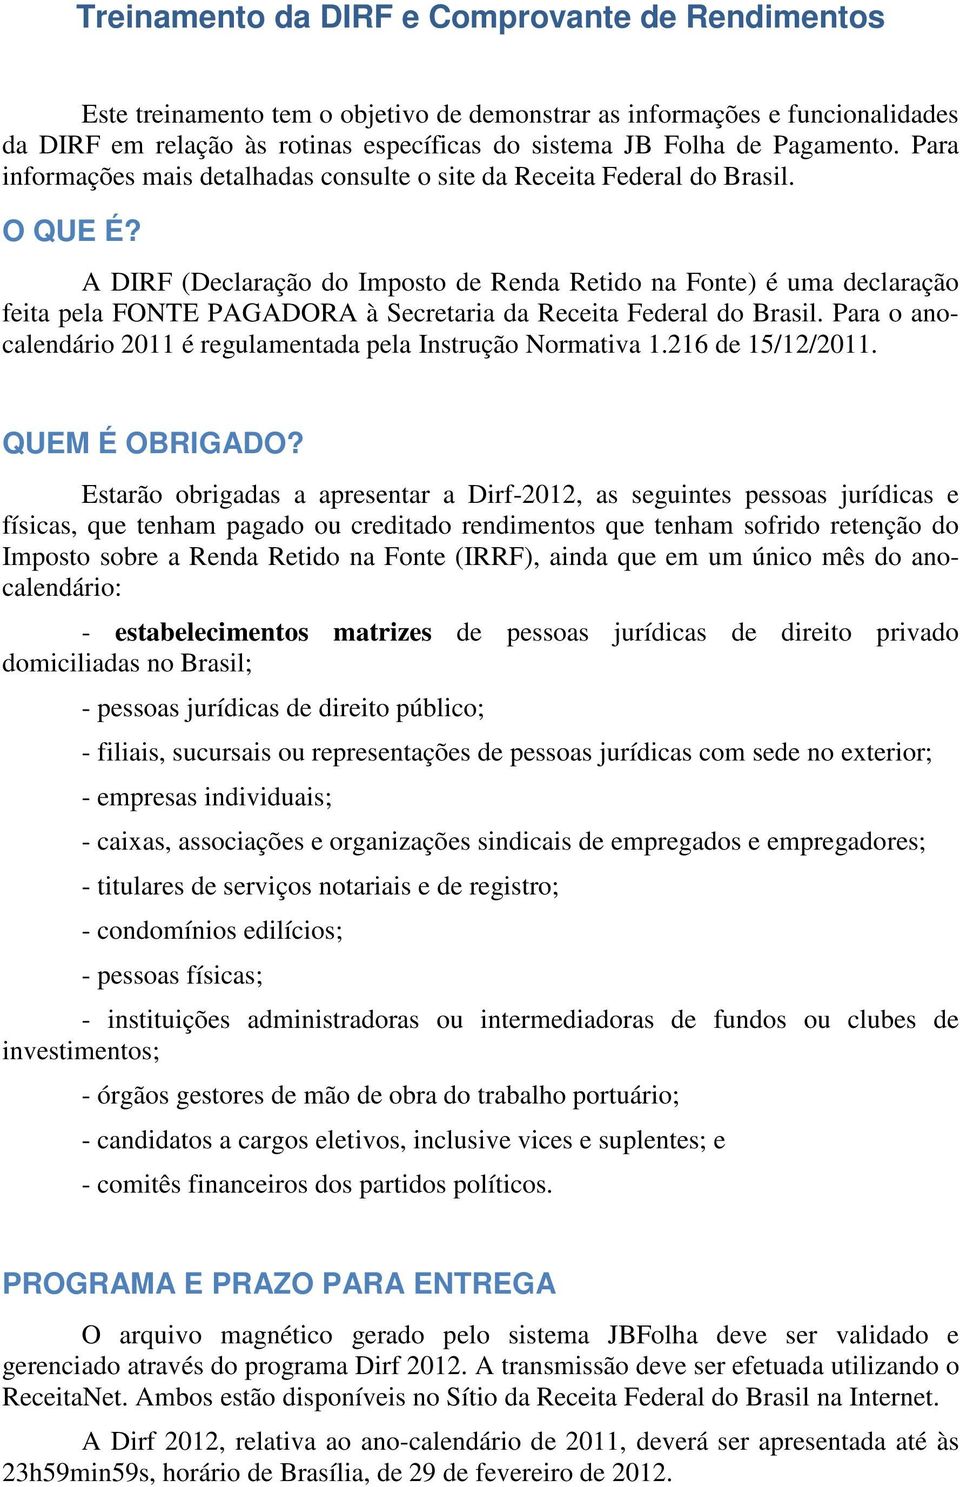 A DIRF (Declaração do Imposto de Renda Retido na Fonte) é uma declaração feita pela FONTE PAGADORA à Secretaria da Receita Federal do Brasil.